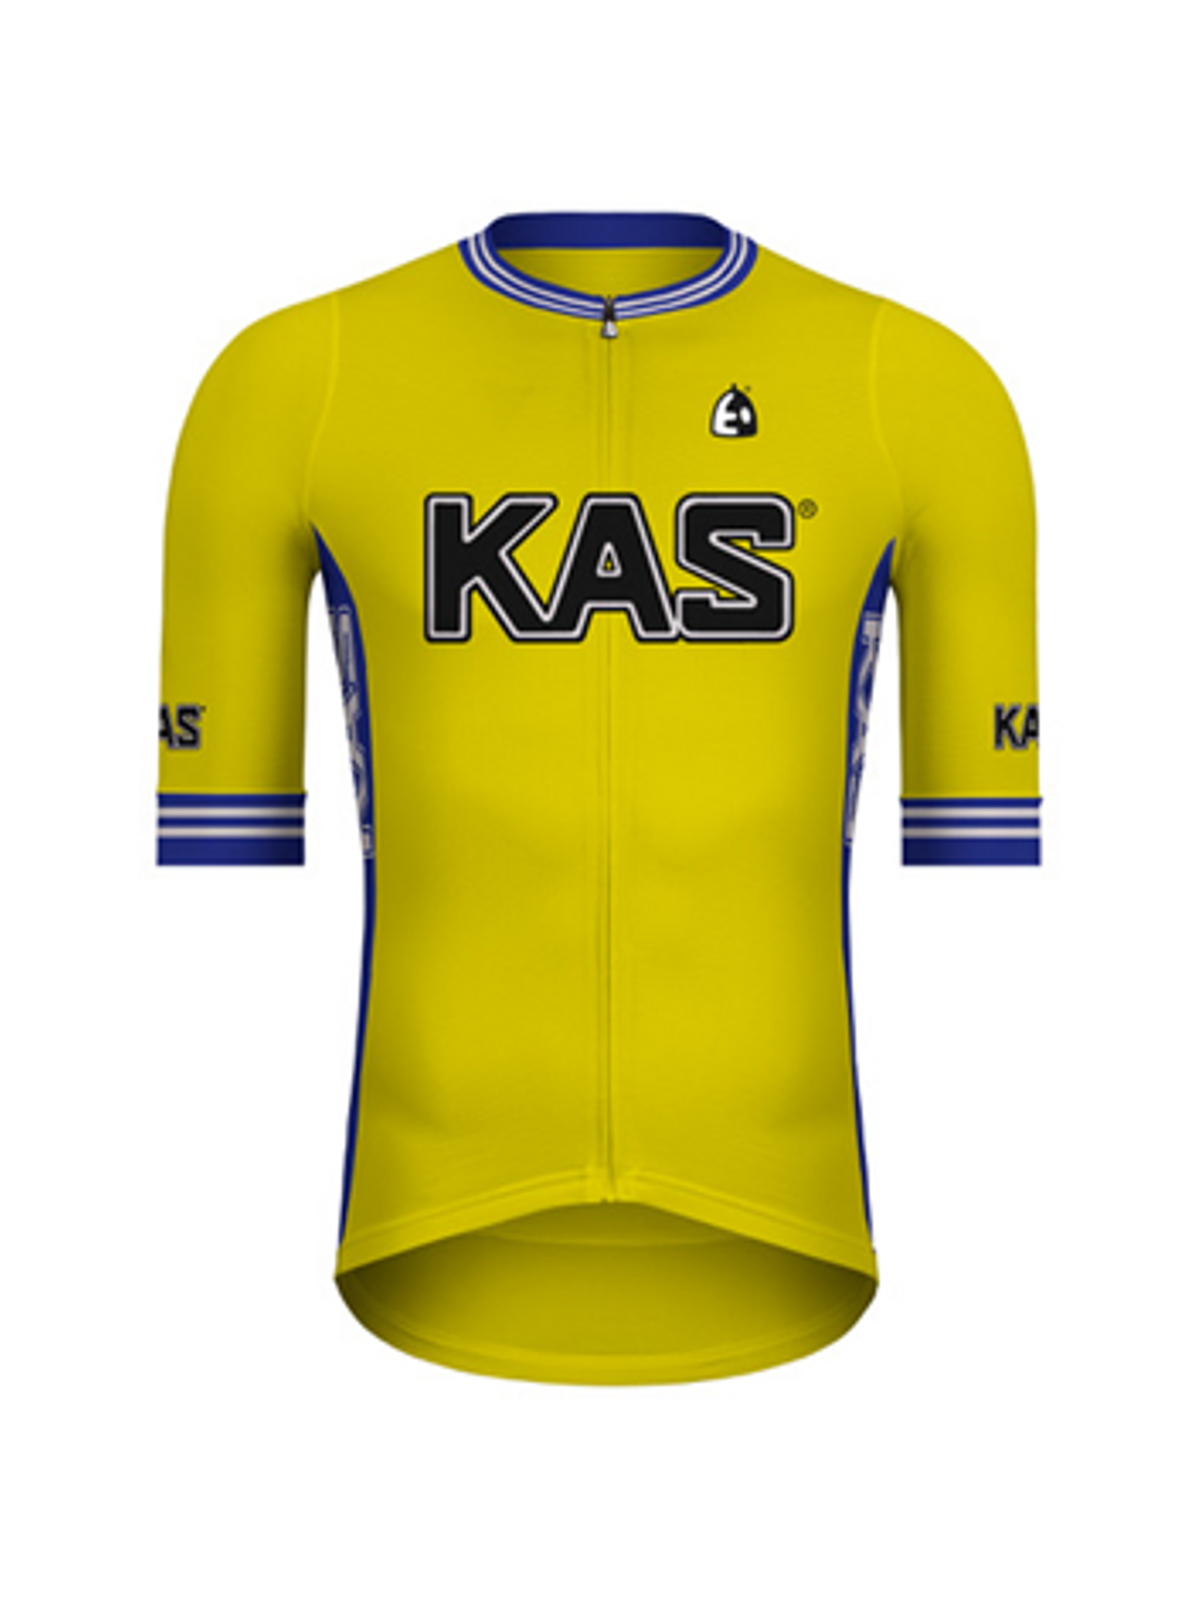 Este es el jersey ciclista que servirá para ayudar a los refugiados ucranianos.